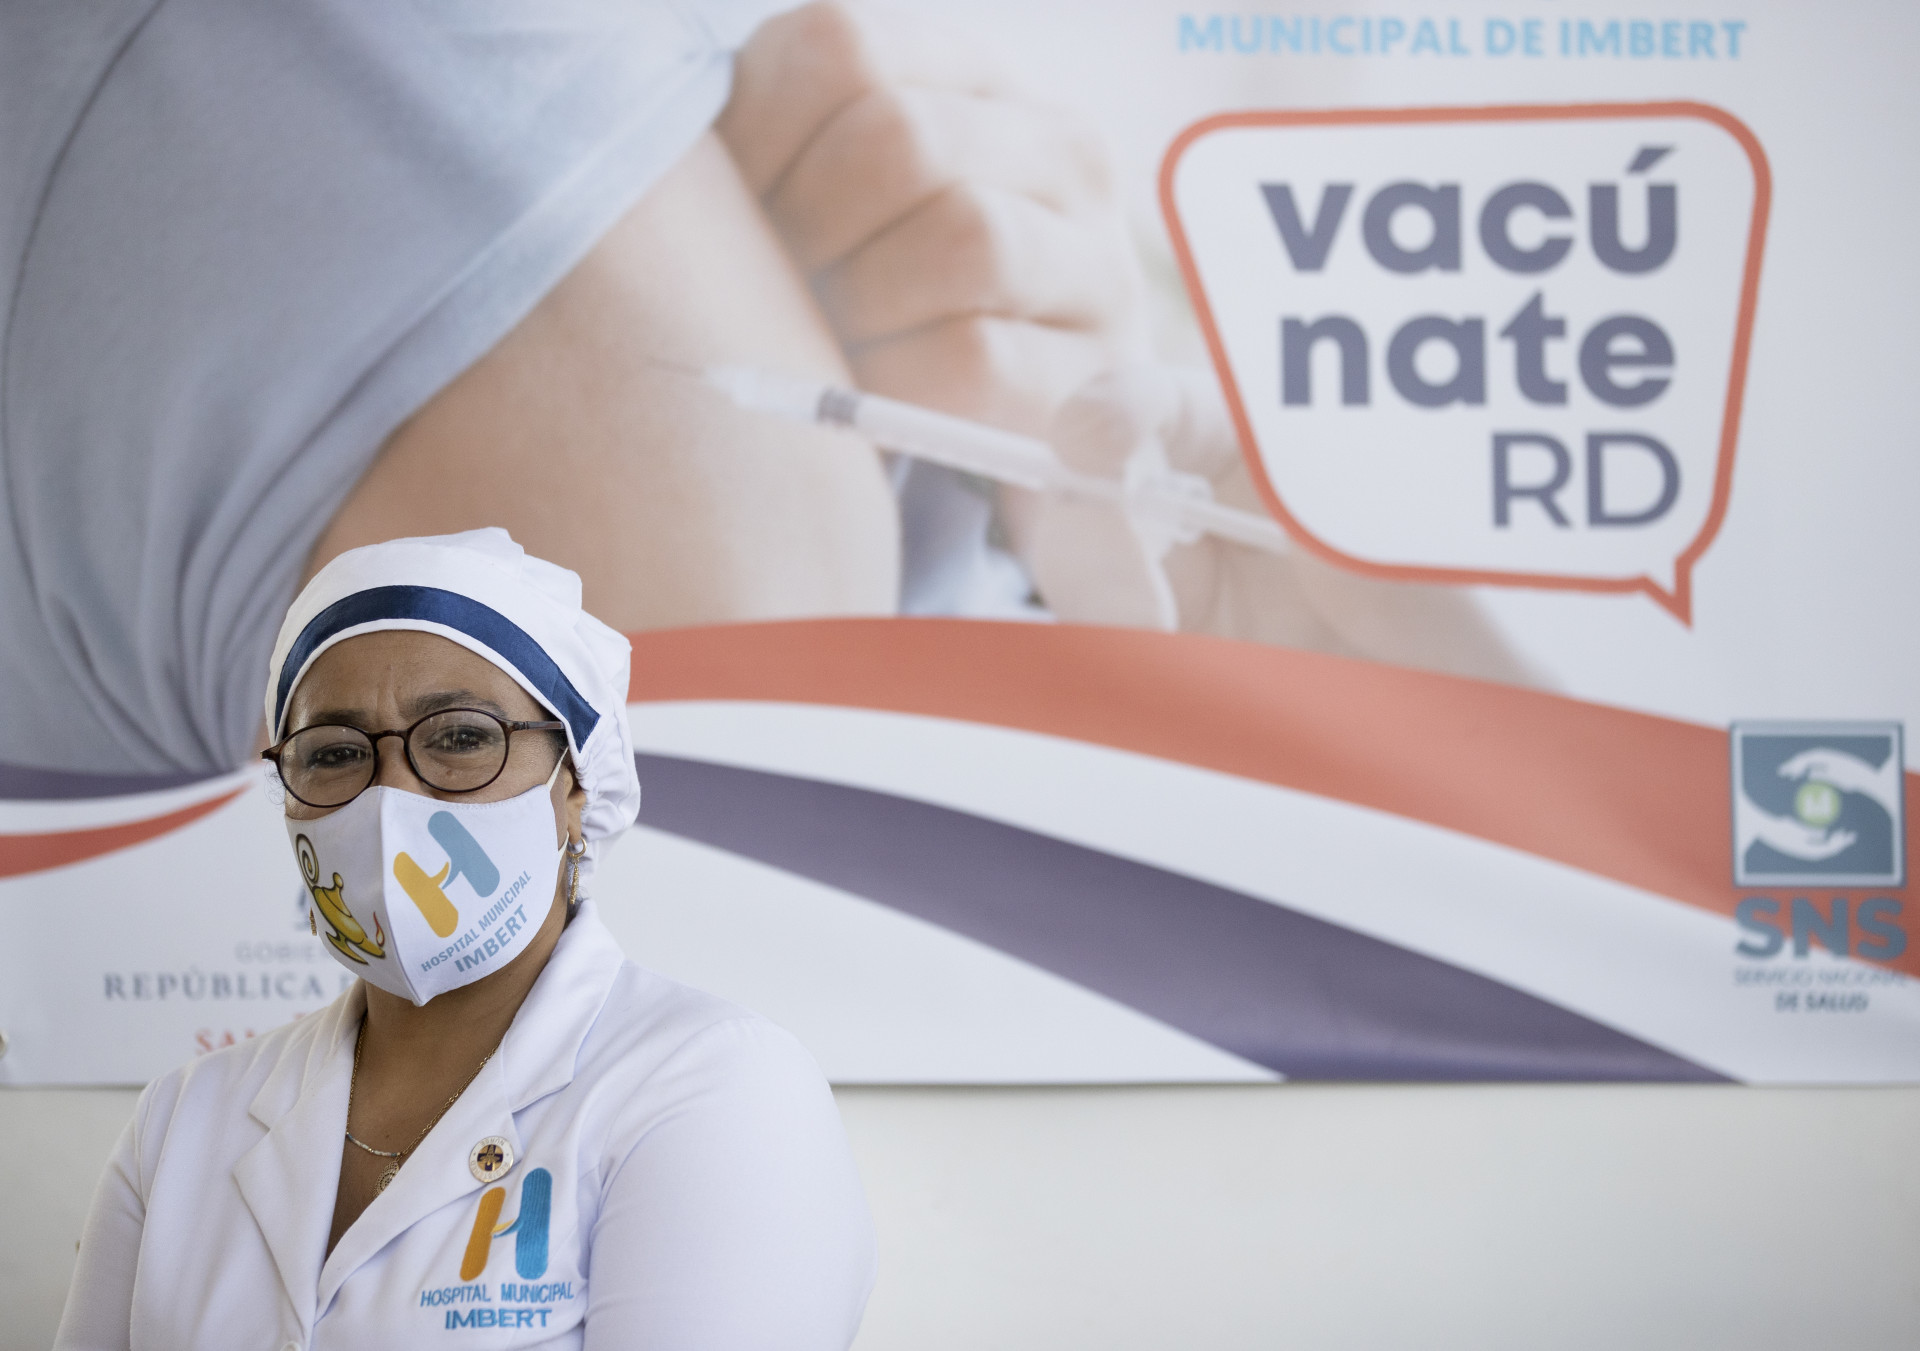 REPÚBLICA DOMINICANA: Vacúnate RD activa plataforma web para programar citas de vacunación